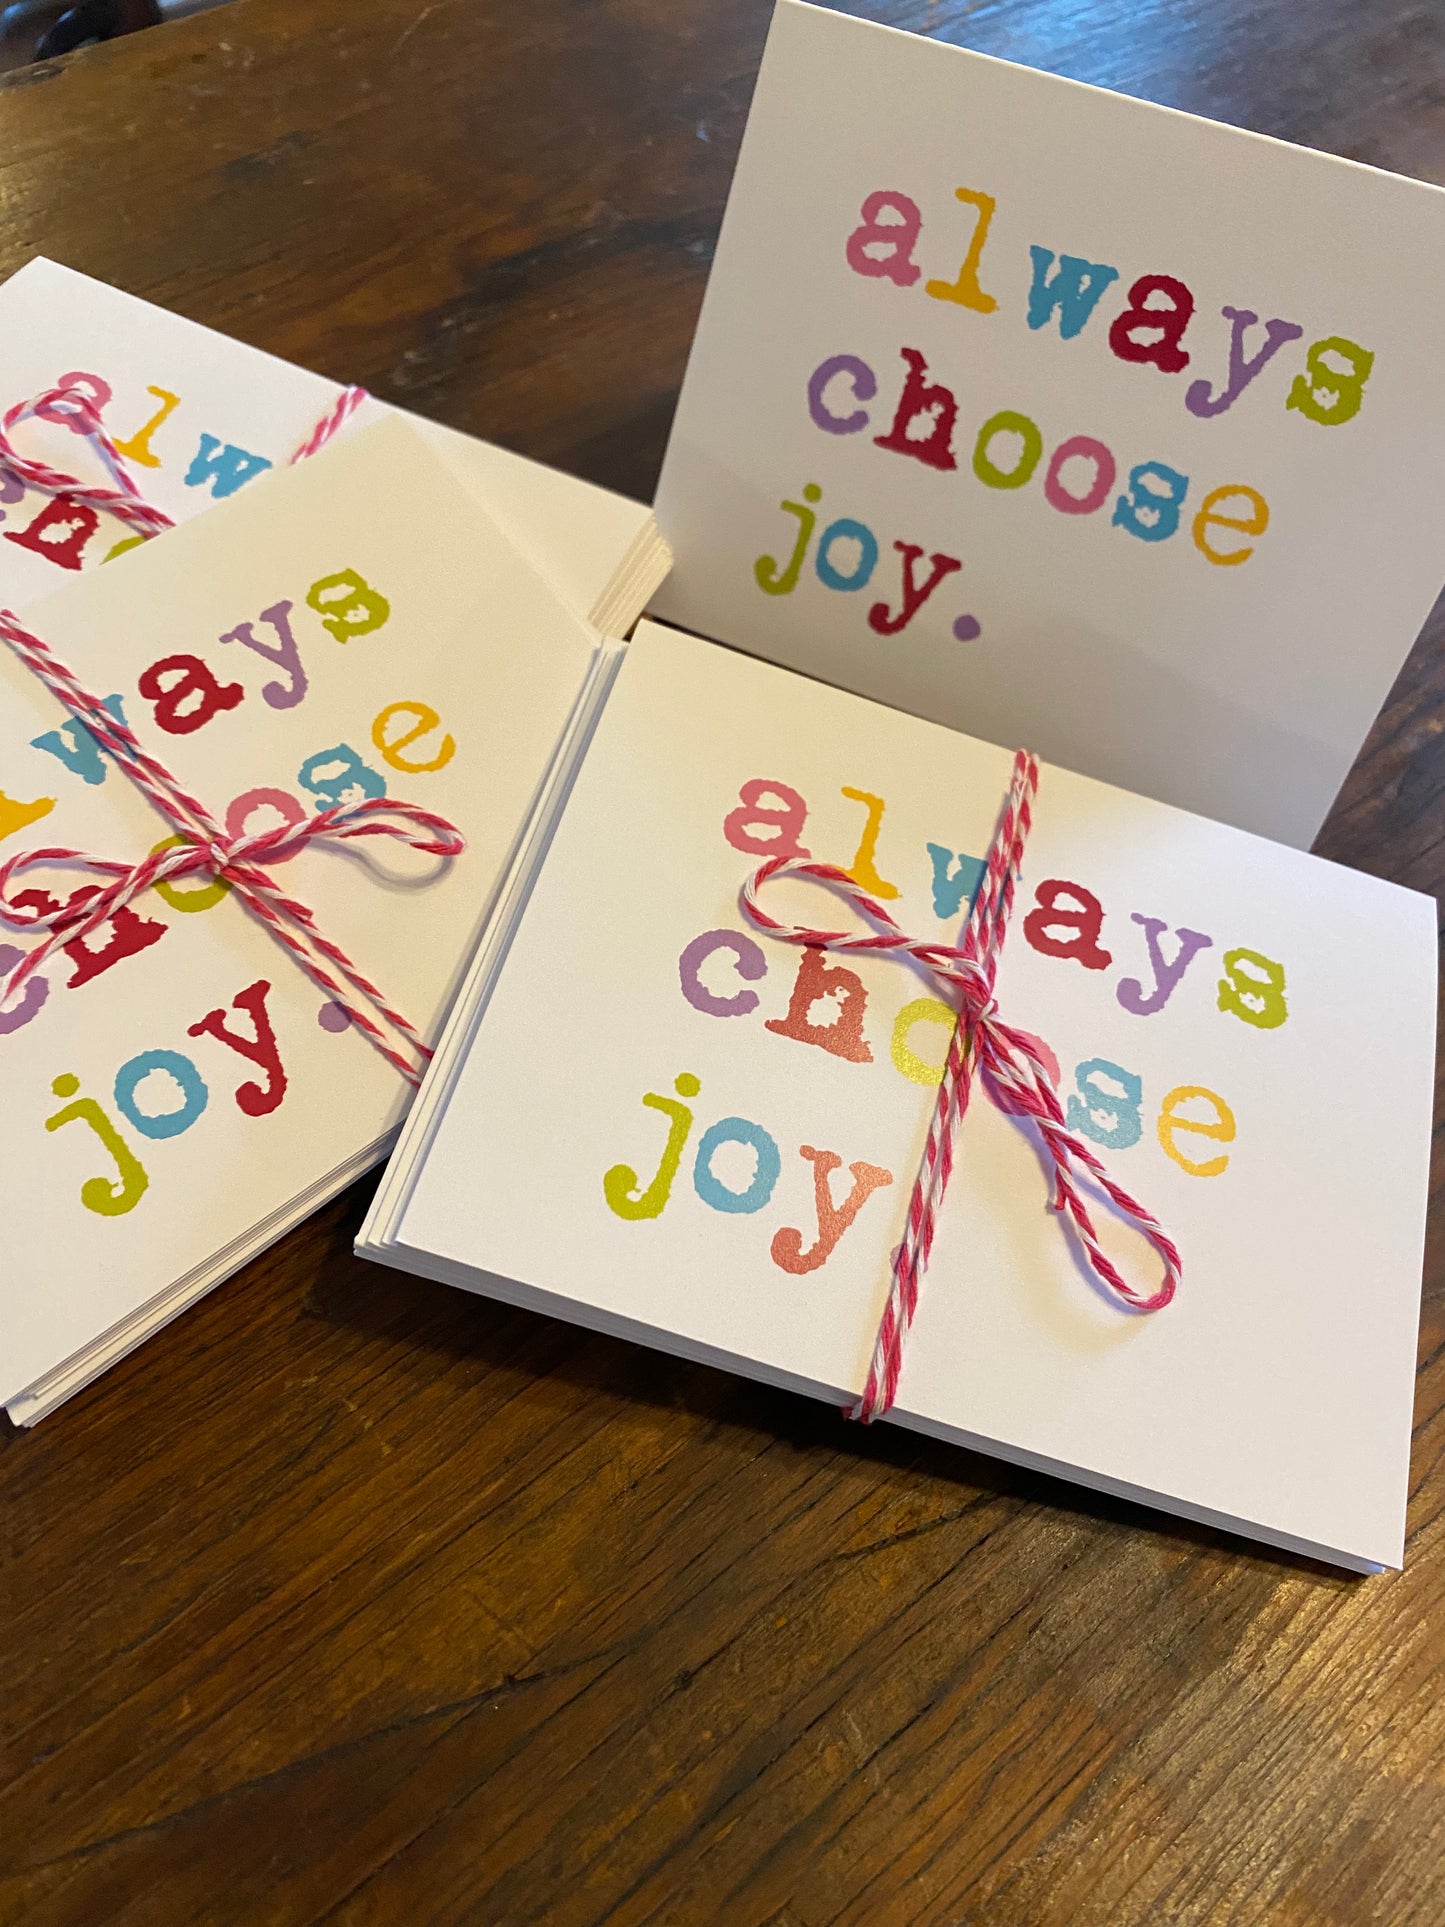 Notecards Always Choose Joy